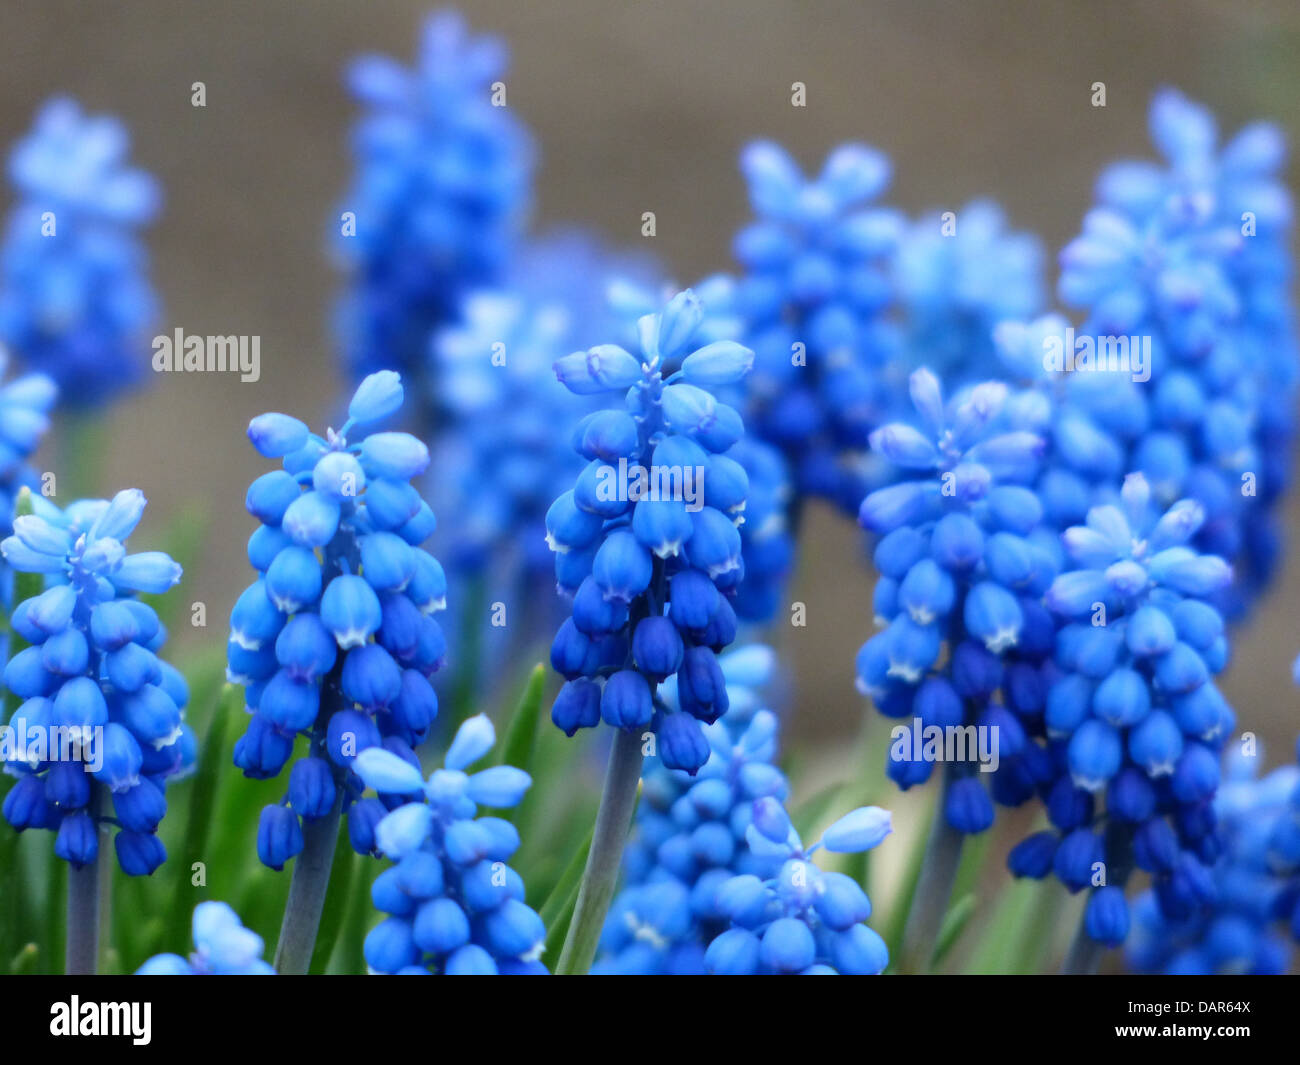 Common grape hyacinth muscari fleur bleu Banque D'Images